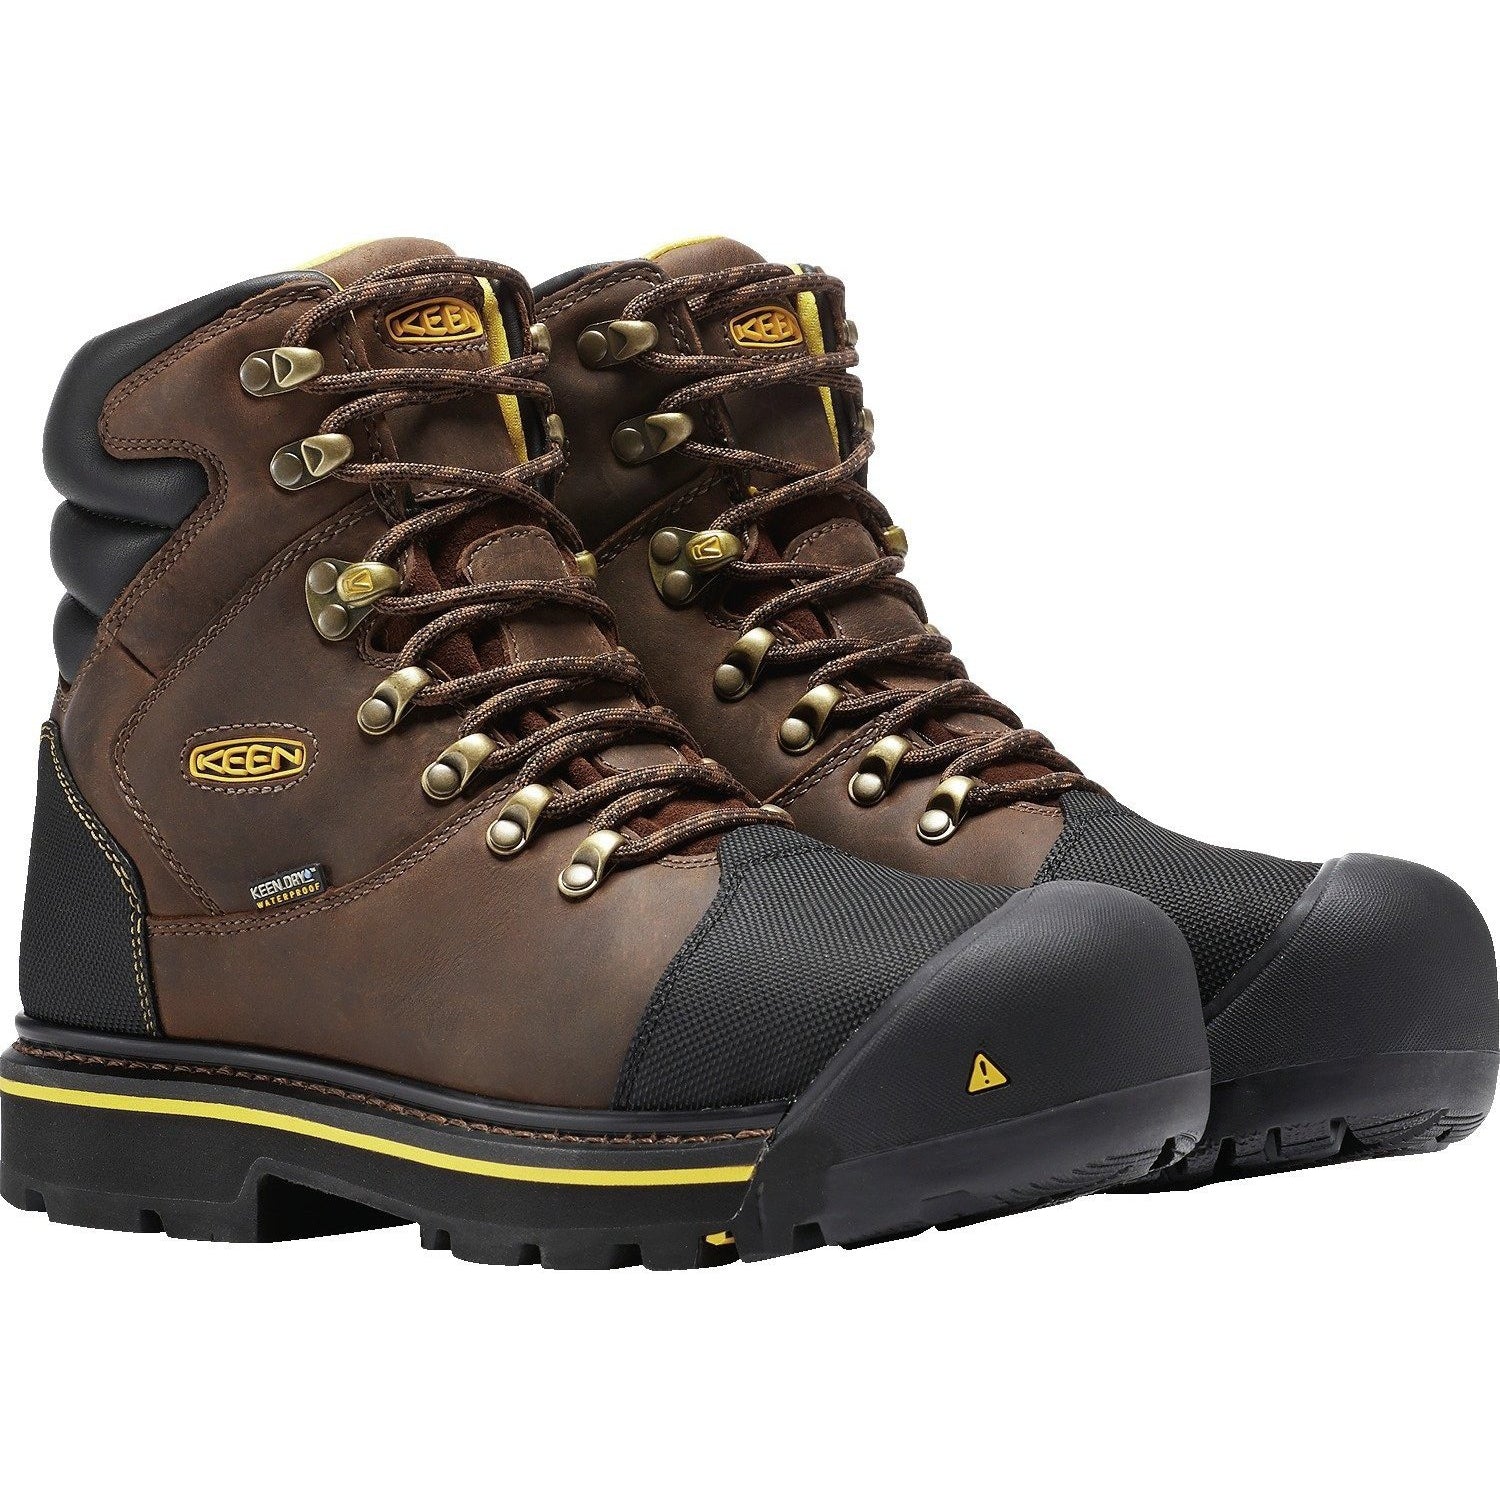 Keen Utility Men's Milwaukee Steel Toe WP Work Boots - Brown - 1009174 8 / Medium / Brown - Overlook Boots